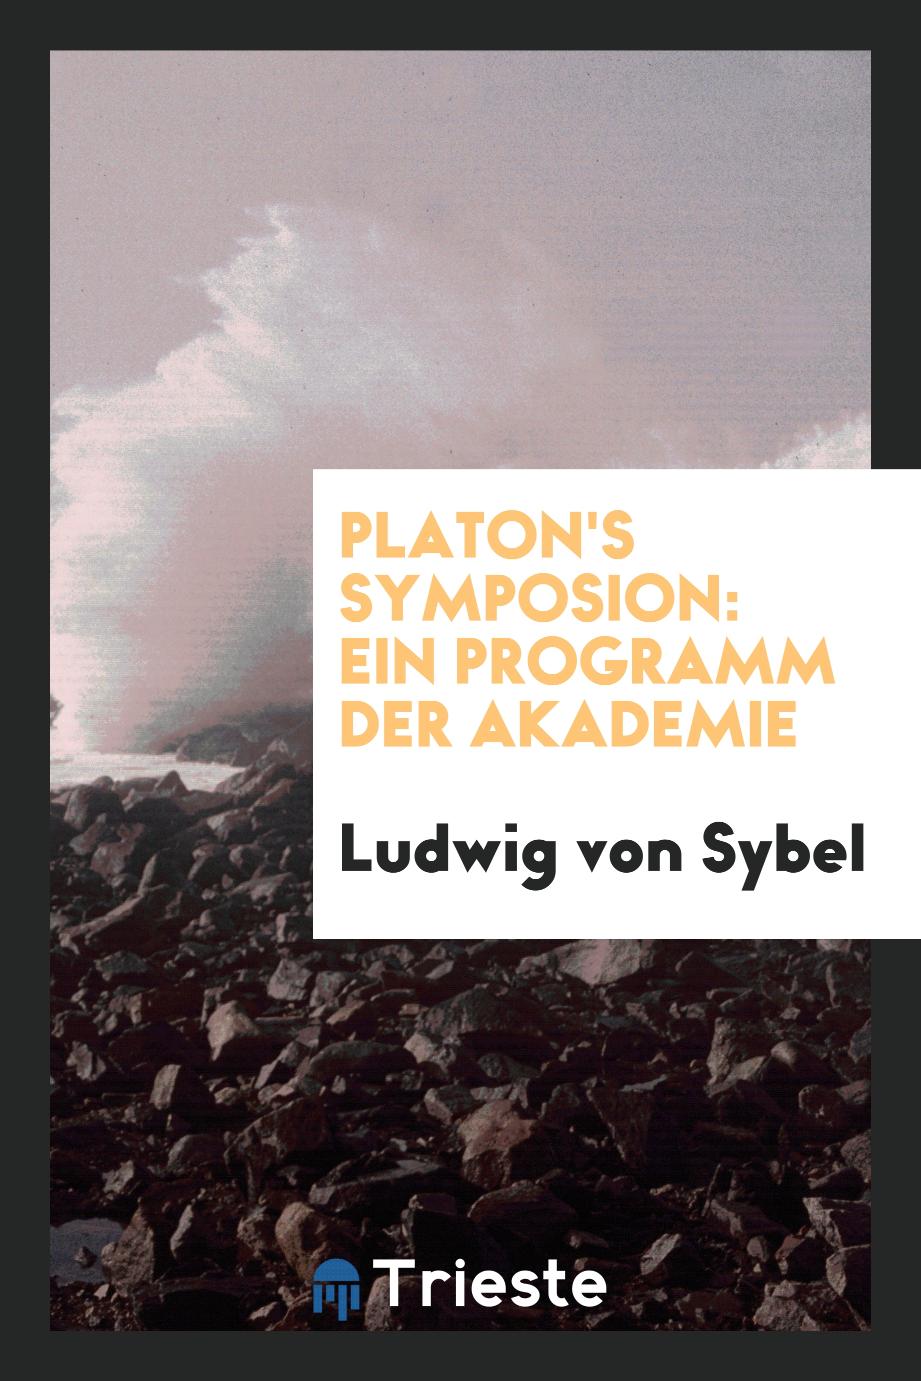 Ludwig von Sybel - Platon's Symposion: Ein Programm der Akademie